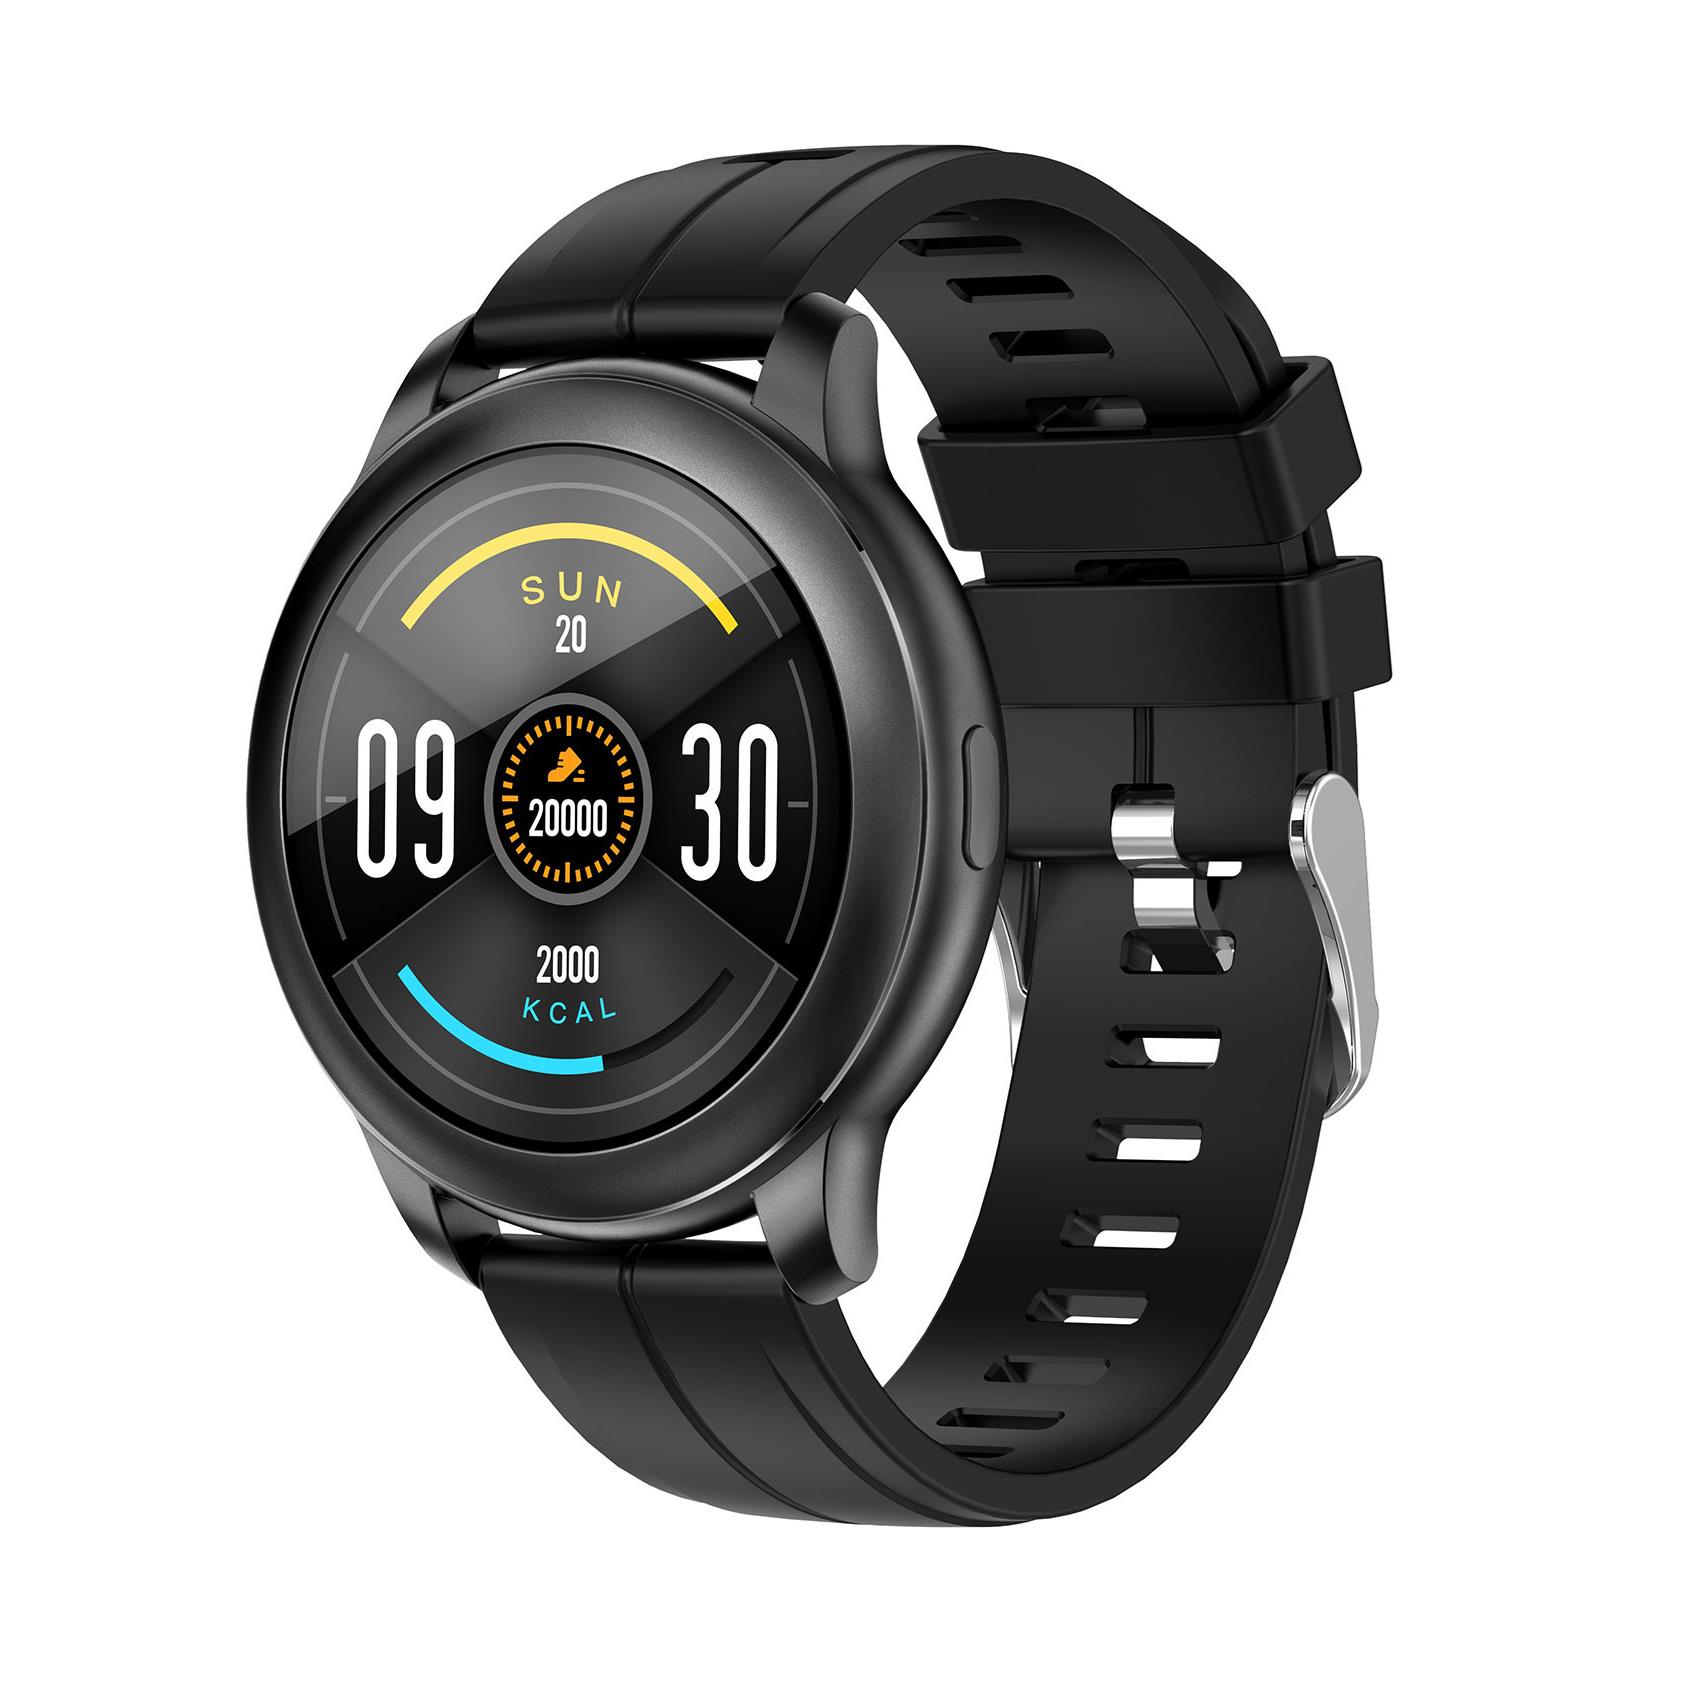 Celly presenta la gamma TRAINER: 4 smartwatch e fitness tracker